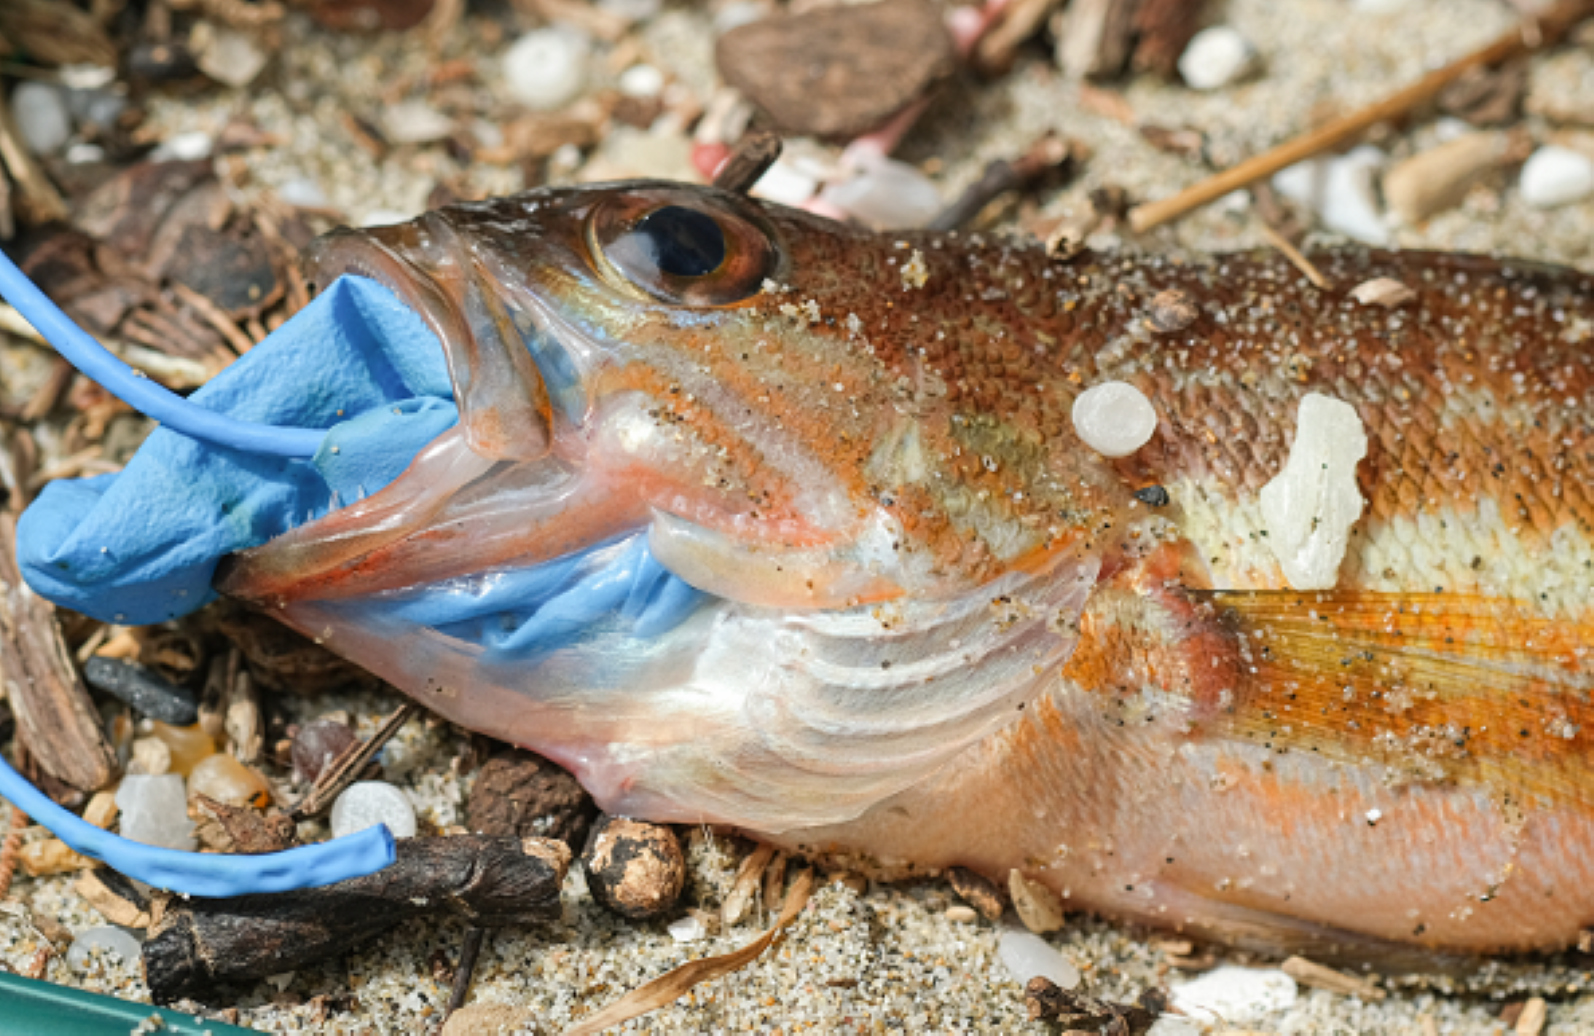 La contaminación de plásticos en los océanos se cuadruplicará en 2050, según informe de WWF